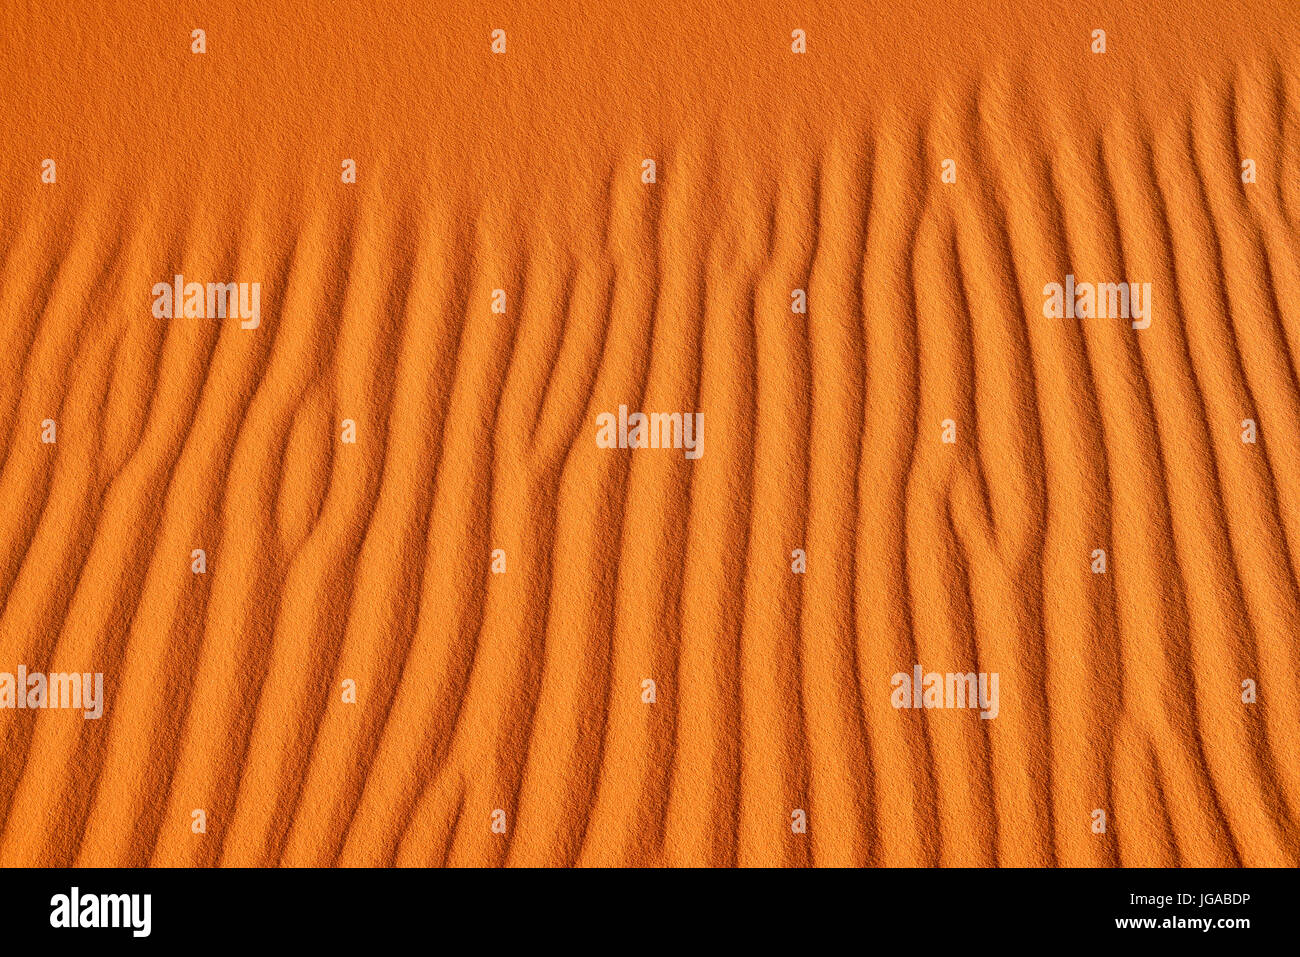 Ondulaciones de arena en las dunas de arena, de Tassili n'Ajjer Parque Nacional, Sitio del Patrimonio Mundial de la UNESCO, el desierto del Sahara, Argelia Foto de stock